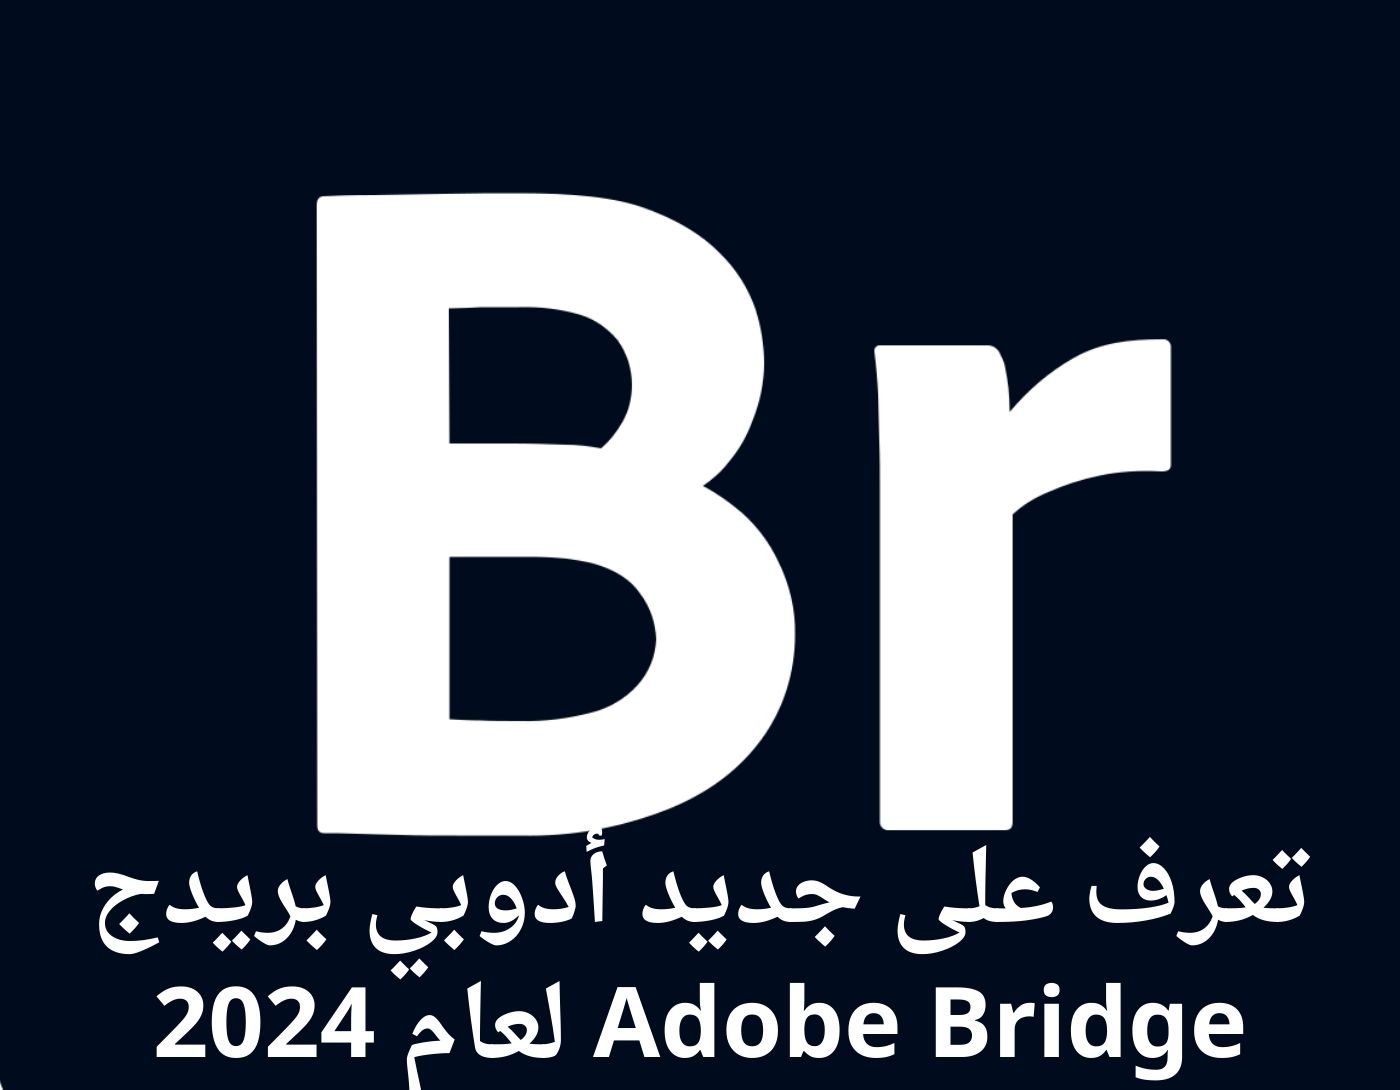 صورة واجهة برنامج Adobe Bridge